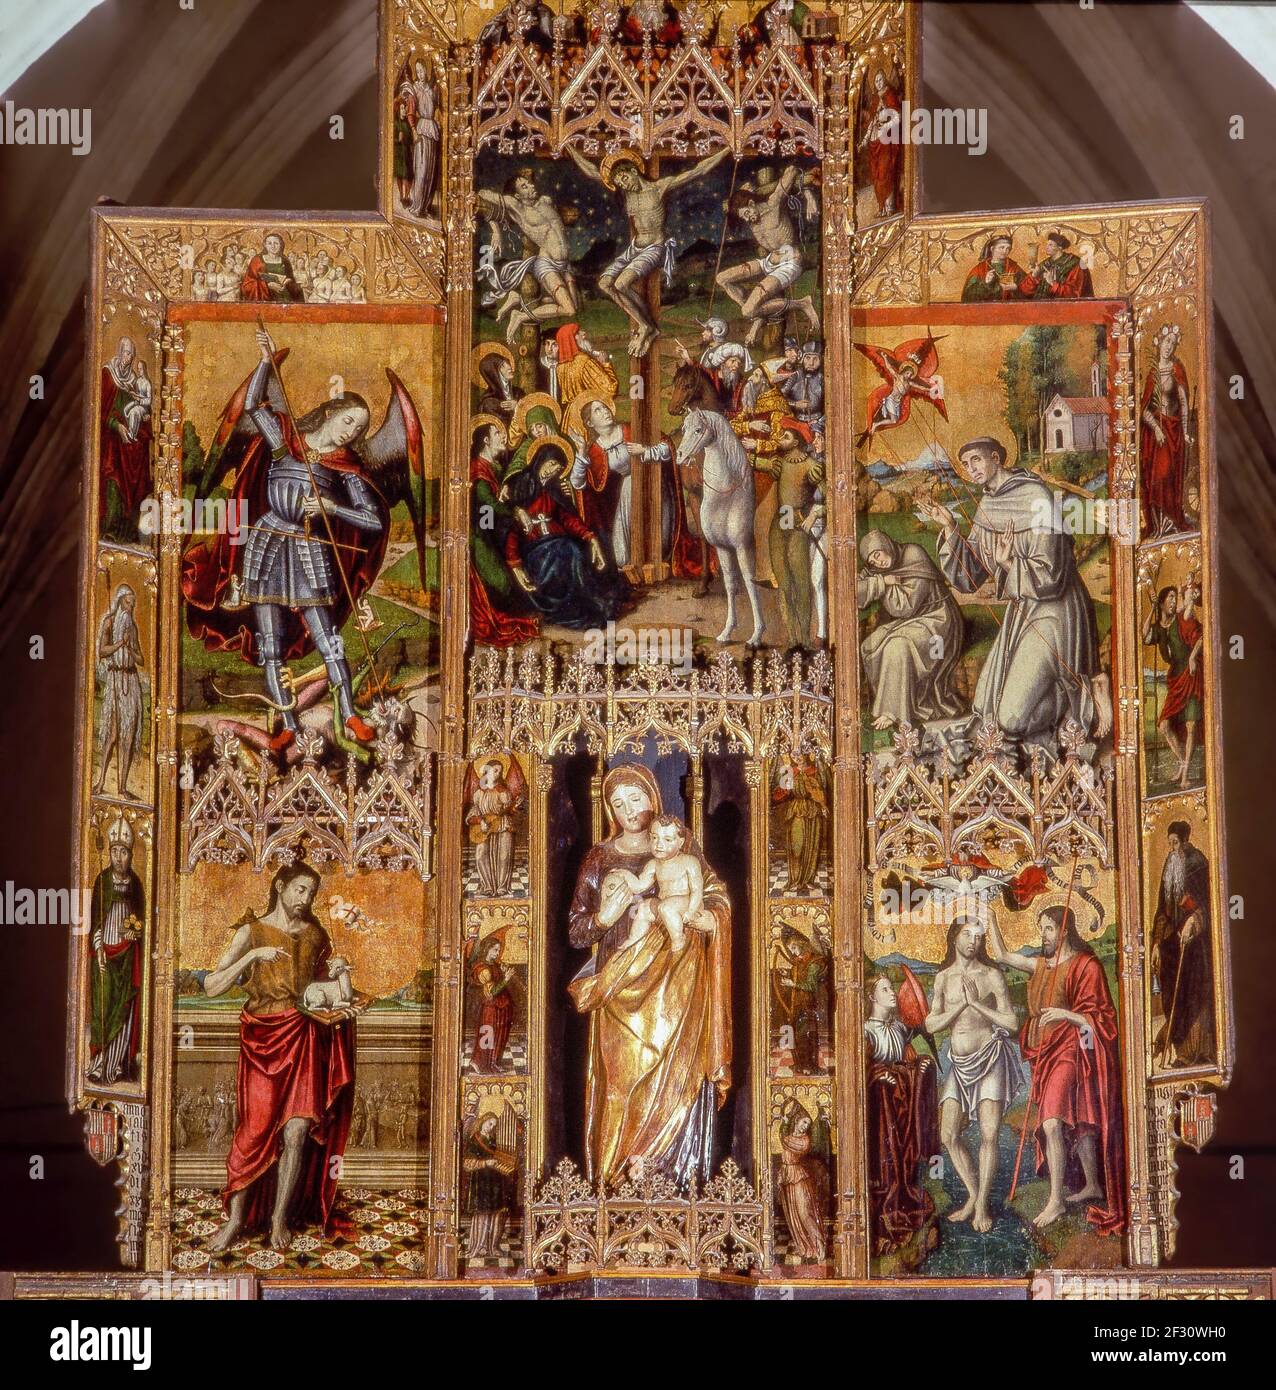 Itly Sardaigne province de Cagliari - Villamar - Église de San Giovanni Battista - remis par Pietro Cavaro 1518 - Statue de Madonna d'Itrai à l'intérieur de la niche Banque D'Images